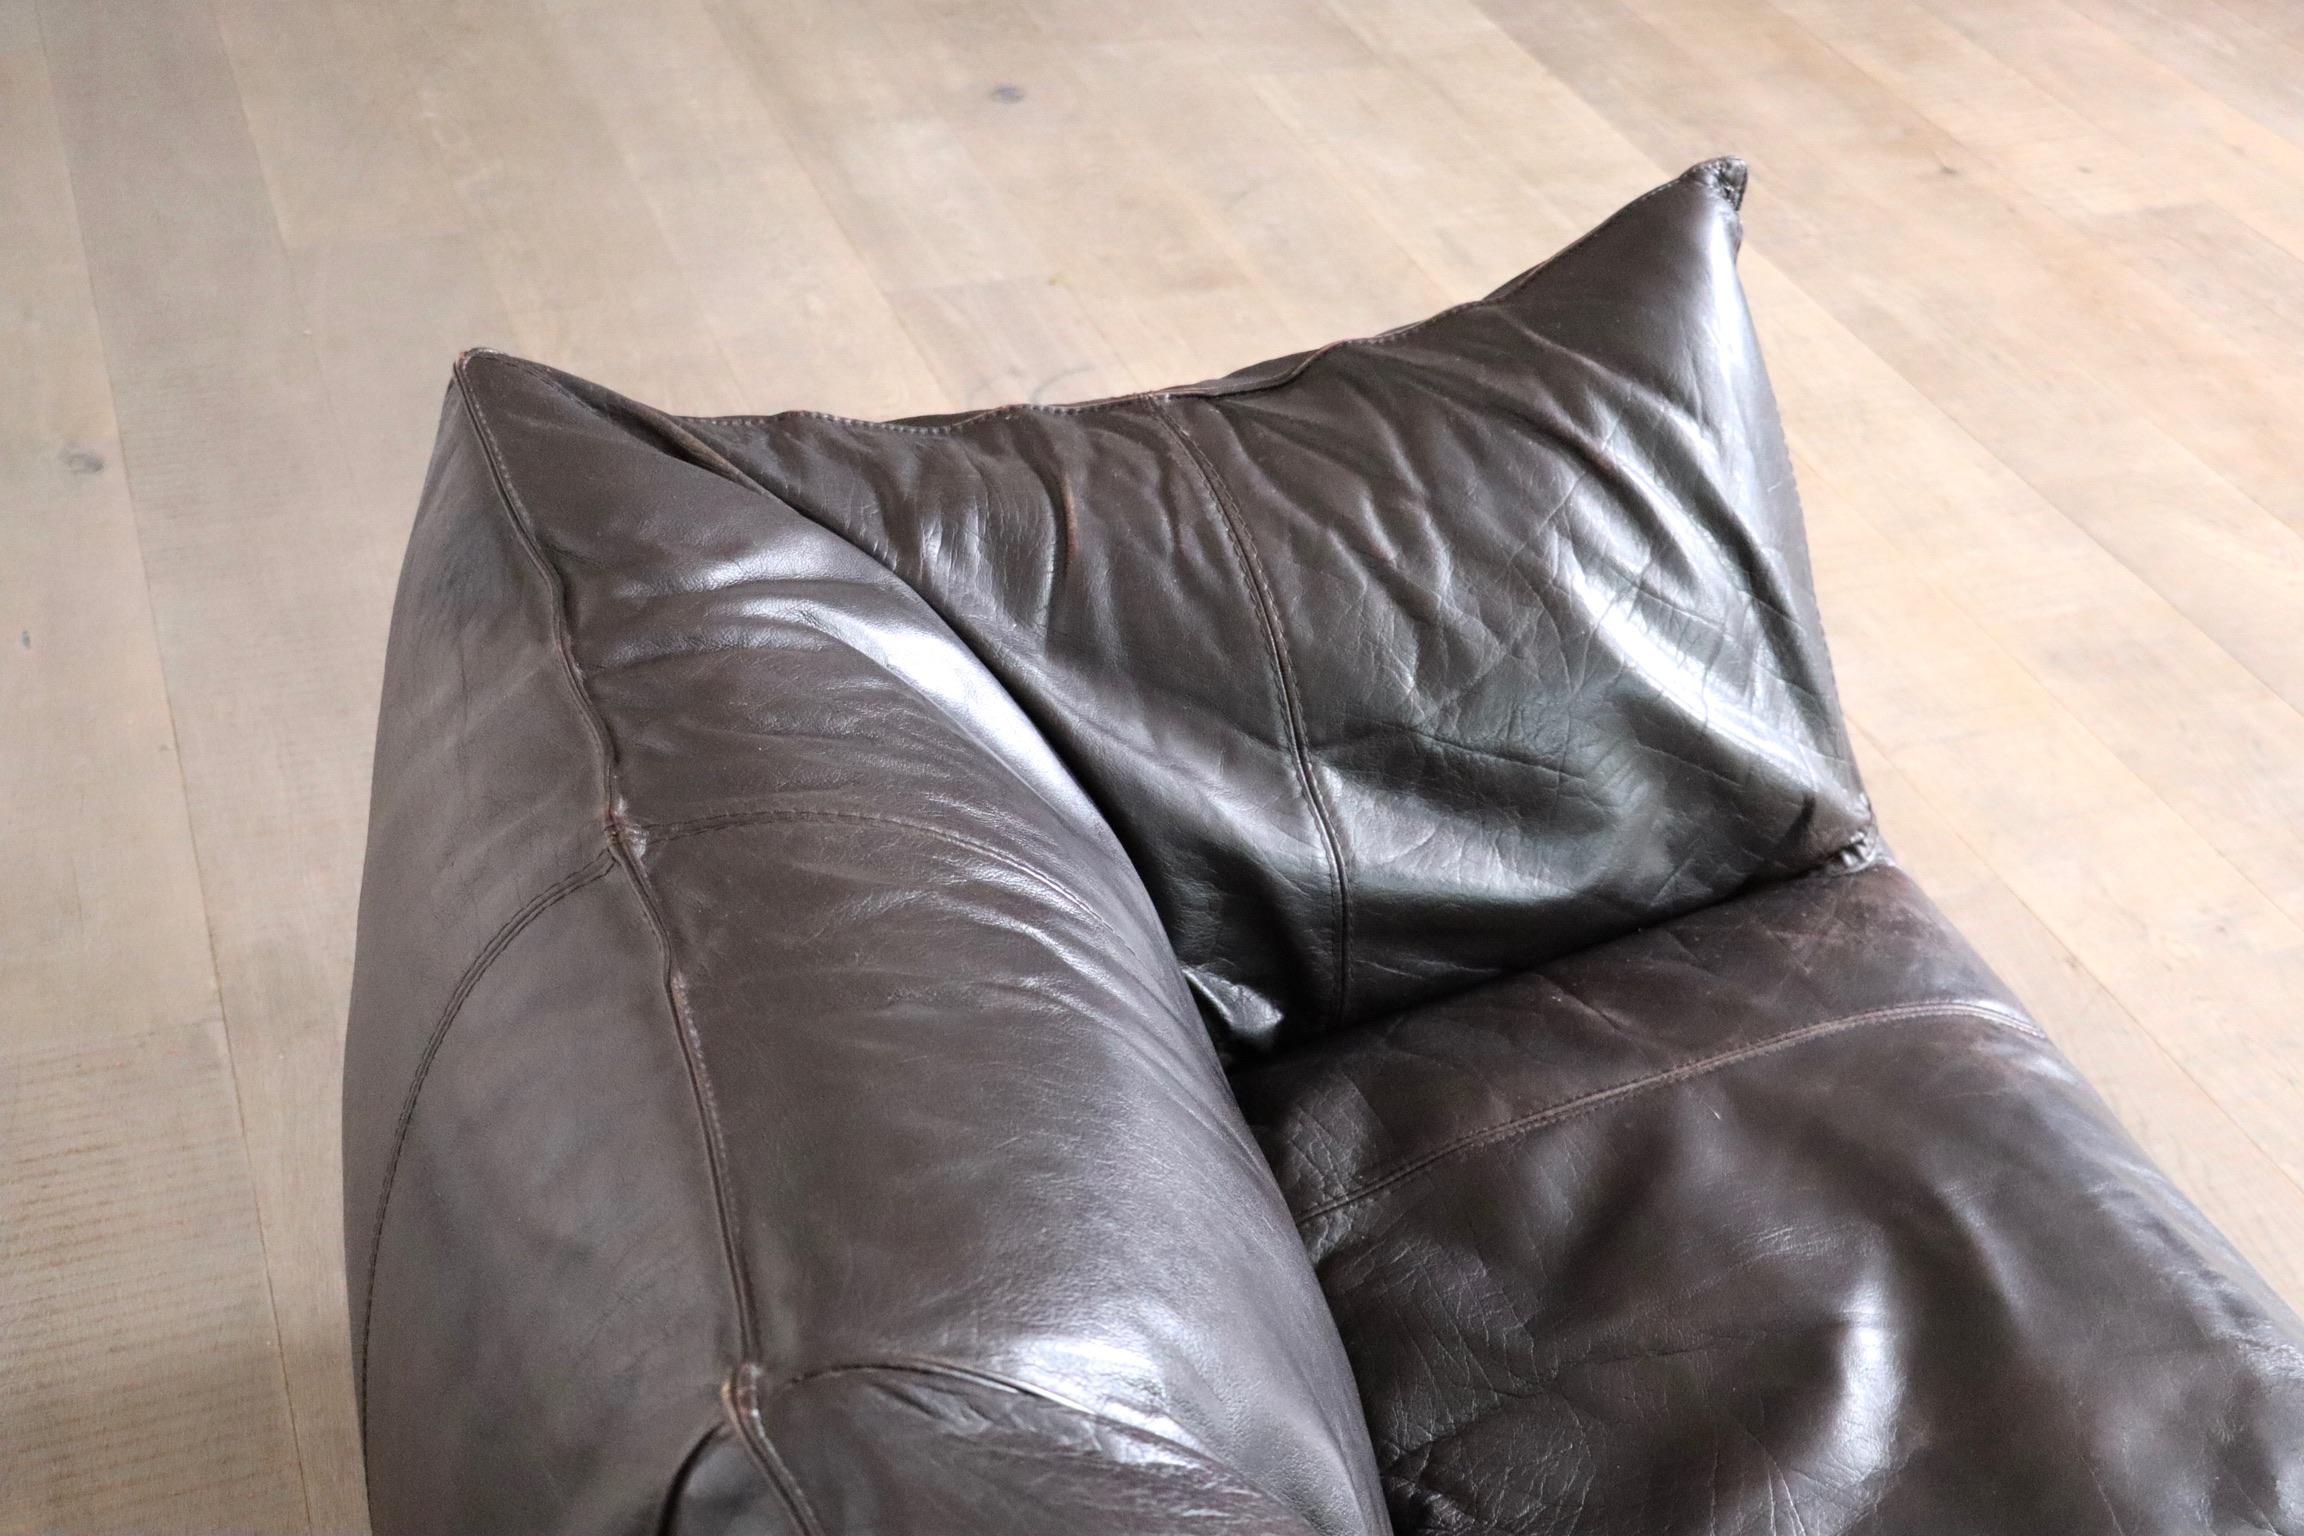 Late 20th Century Le Bambole Sofa In Dark Brown Leather By Mario Bellini For B&B Italia, 1970: